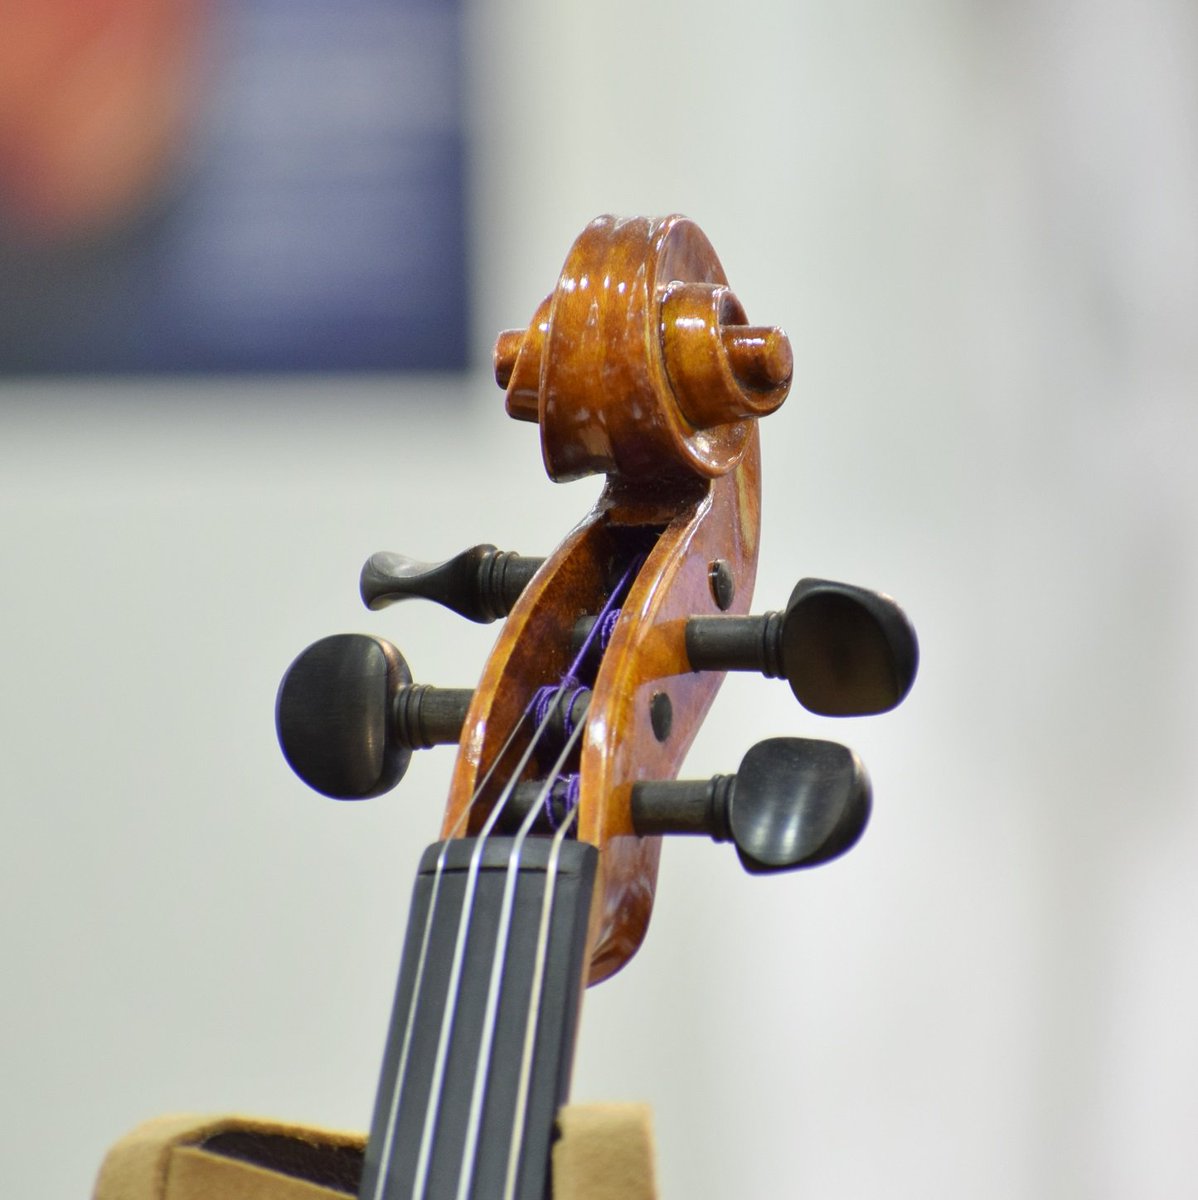 クロサワバイオリン池袋店 Ar Twitter 左利き用violin 先日ご紹介させていただいたレフティ ヴァイオリンがwebからもご購入頂けるようになりました 魂柱やバスバーまで逆位置で設計された特別仕様のヴァイオリンでございます 特価 127 500 税別